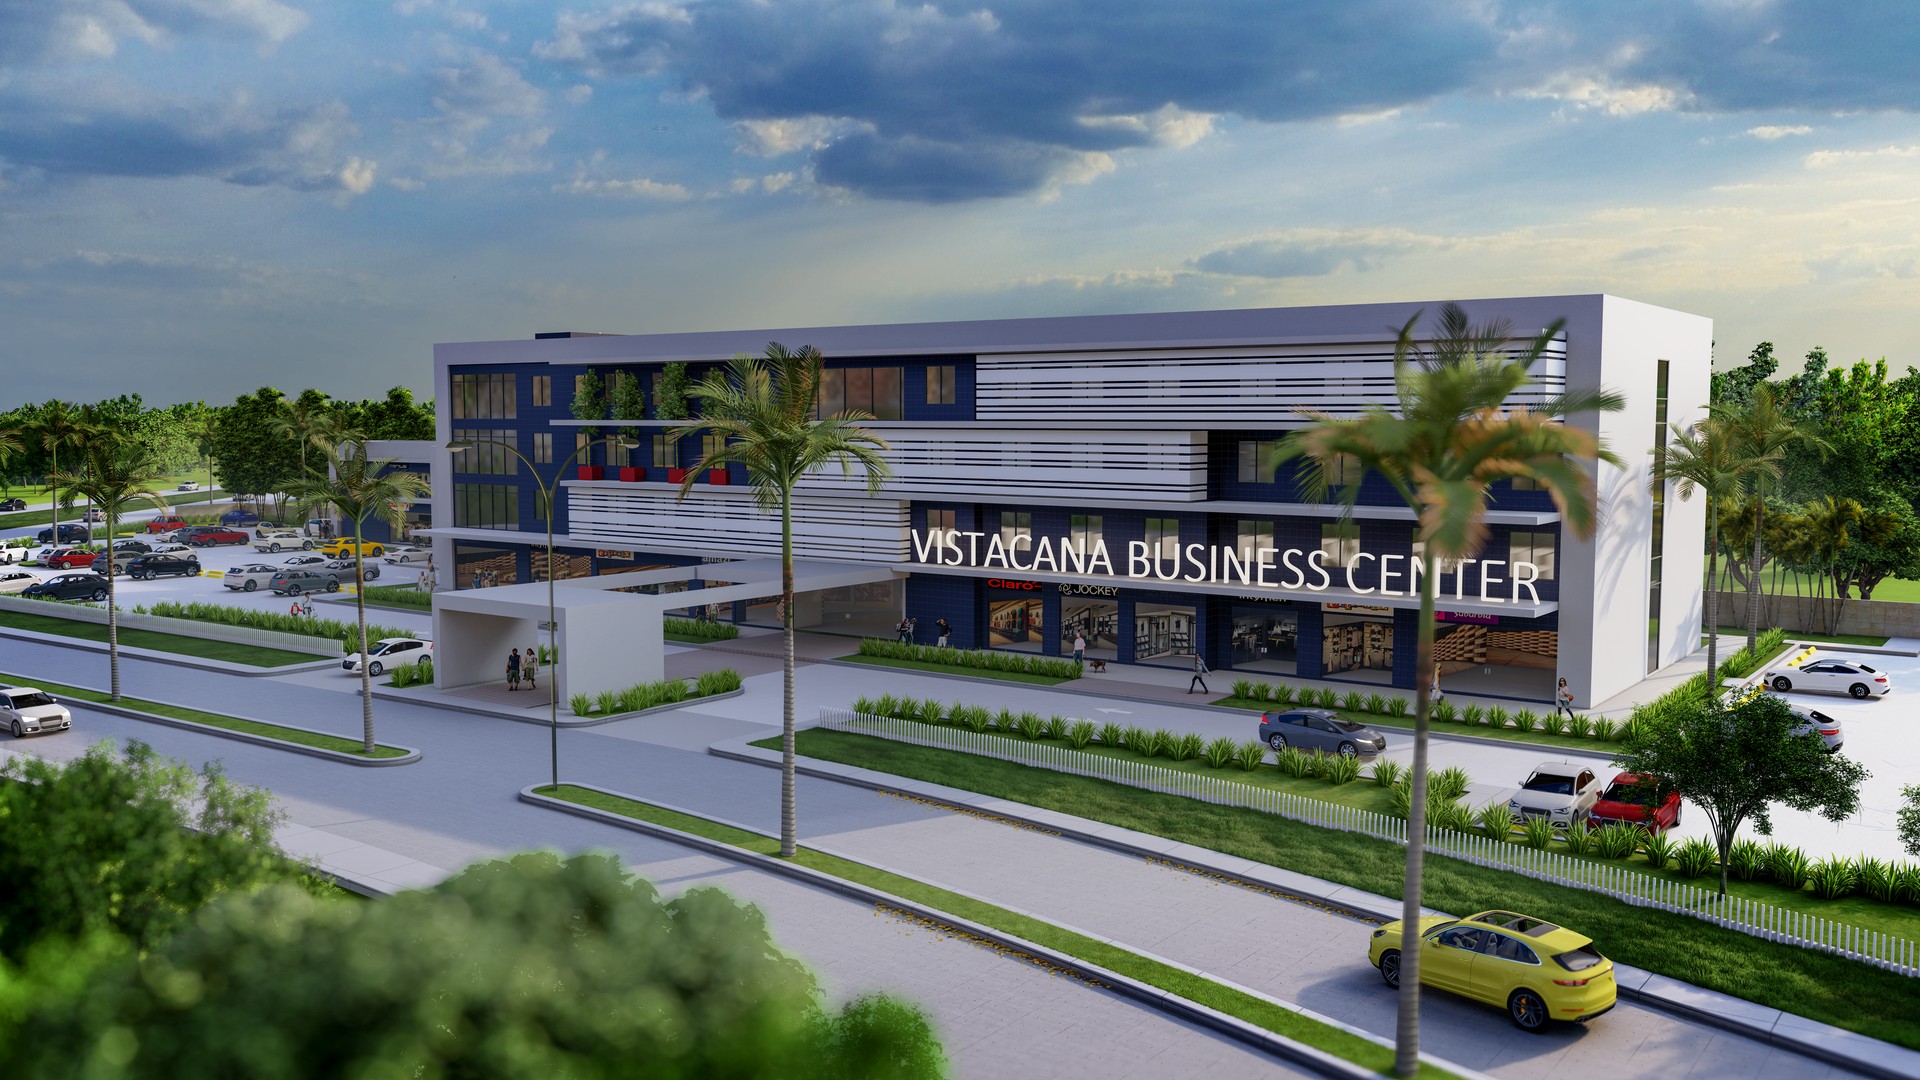 oficinas y locales comerciales - Venta de oficinas comerciales en Vista Cana 3